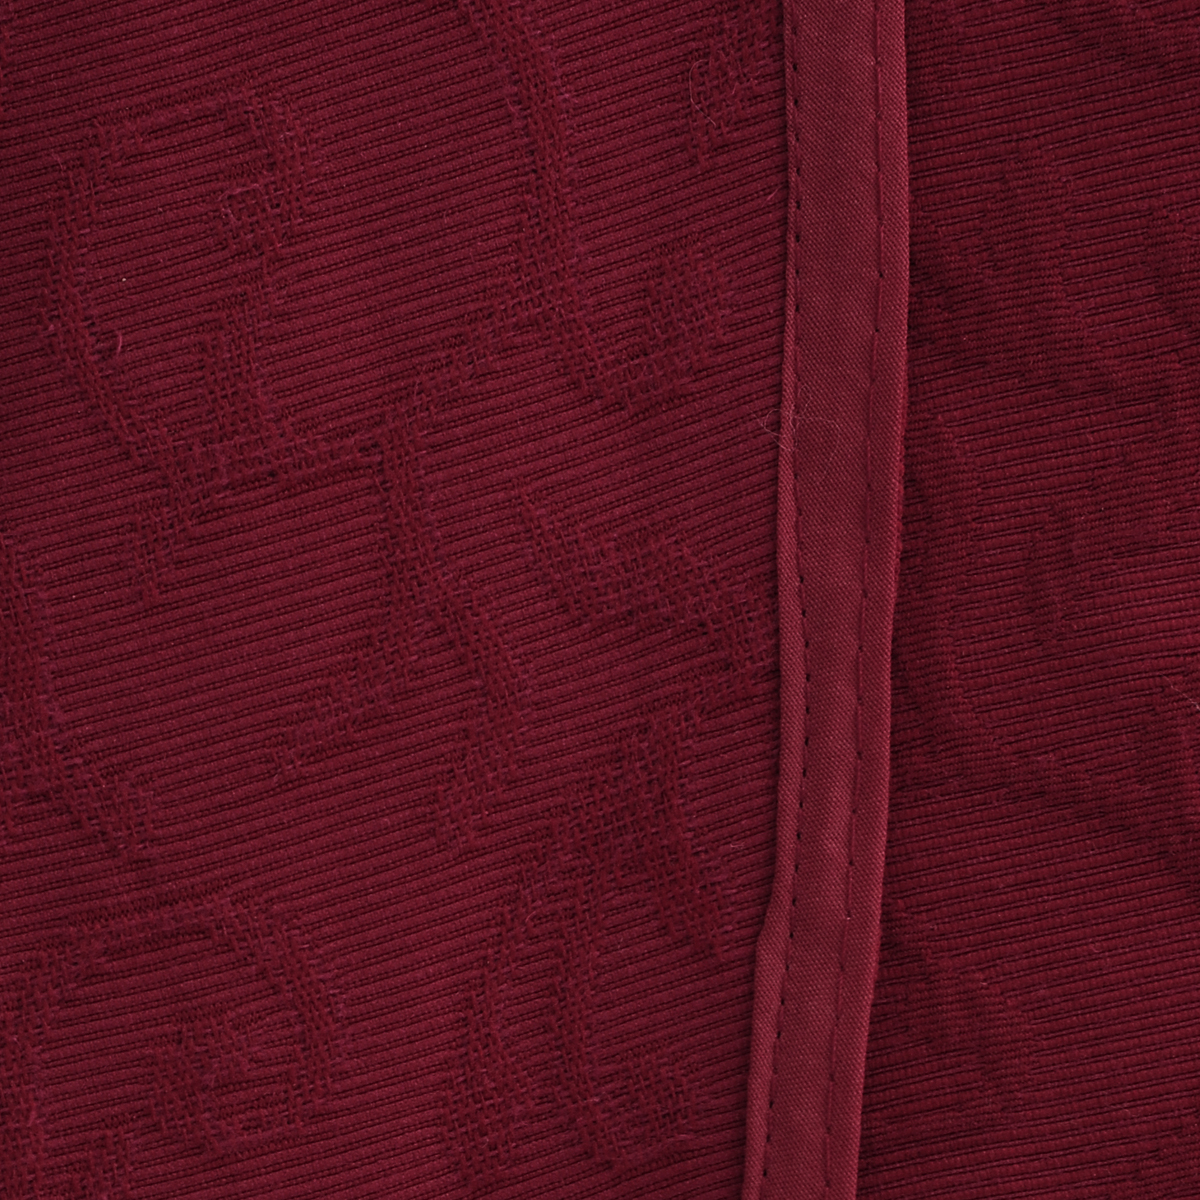 Скатерть "Schaefer", овальная, цвет: бордо, 160 см х 220 см